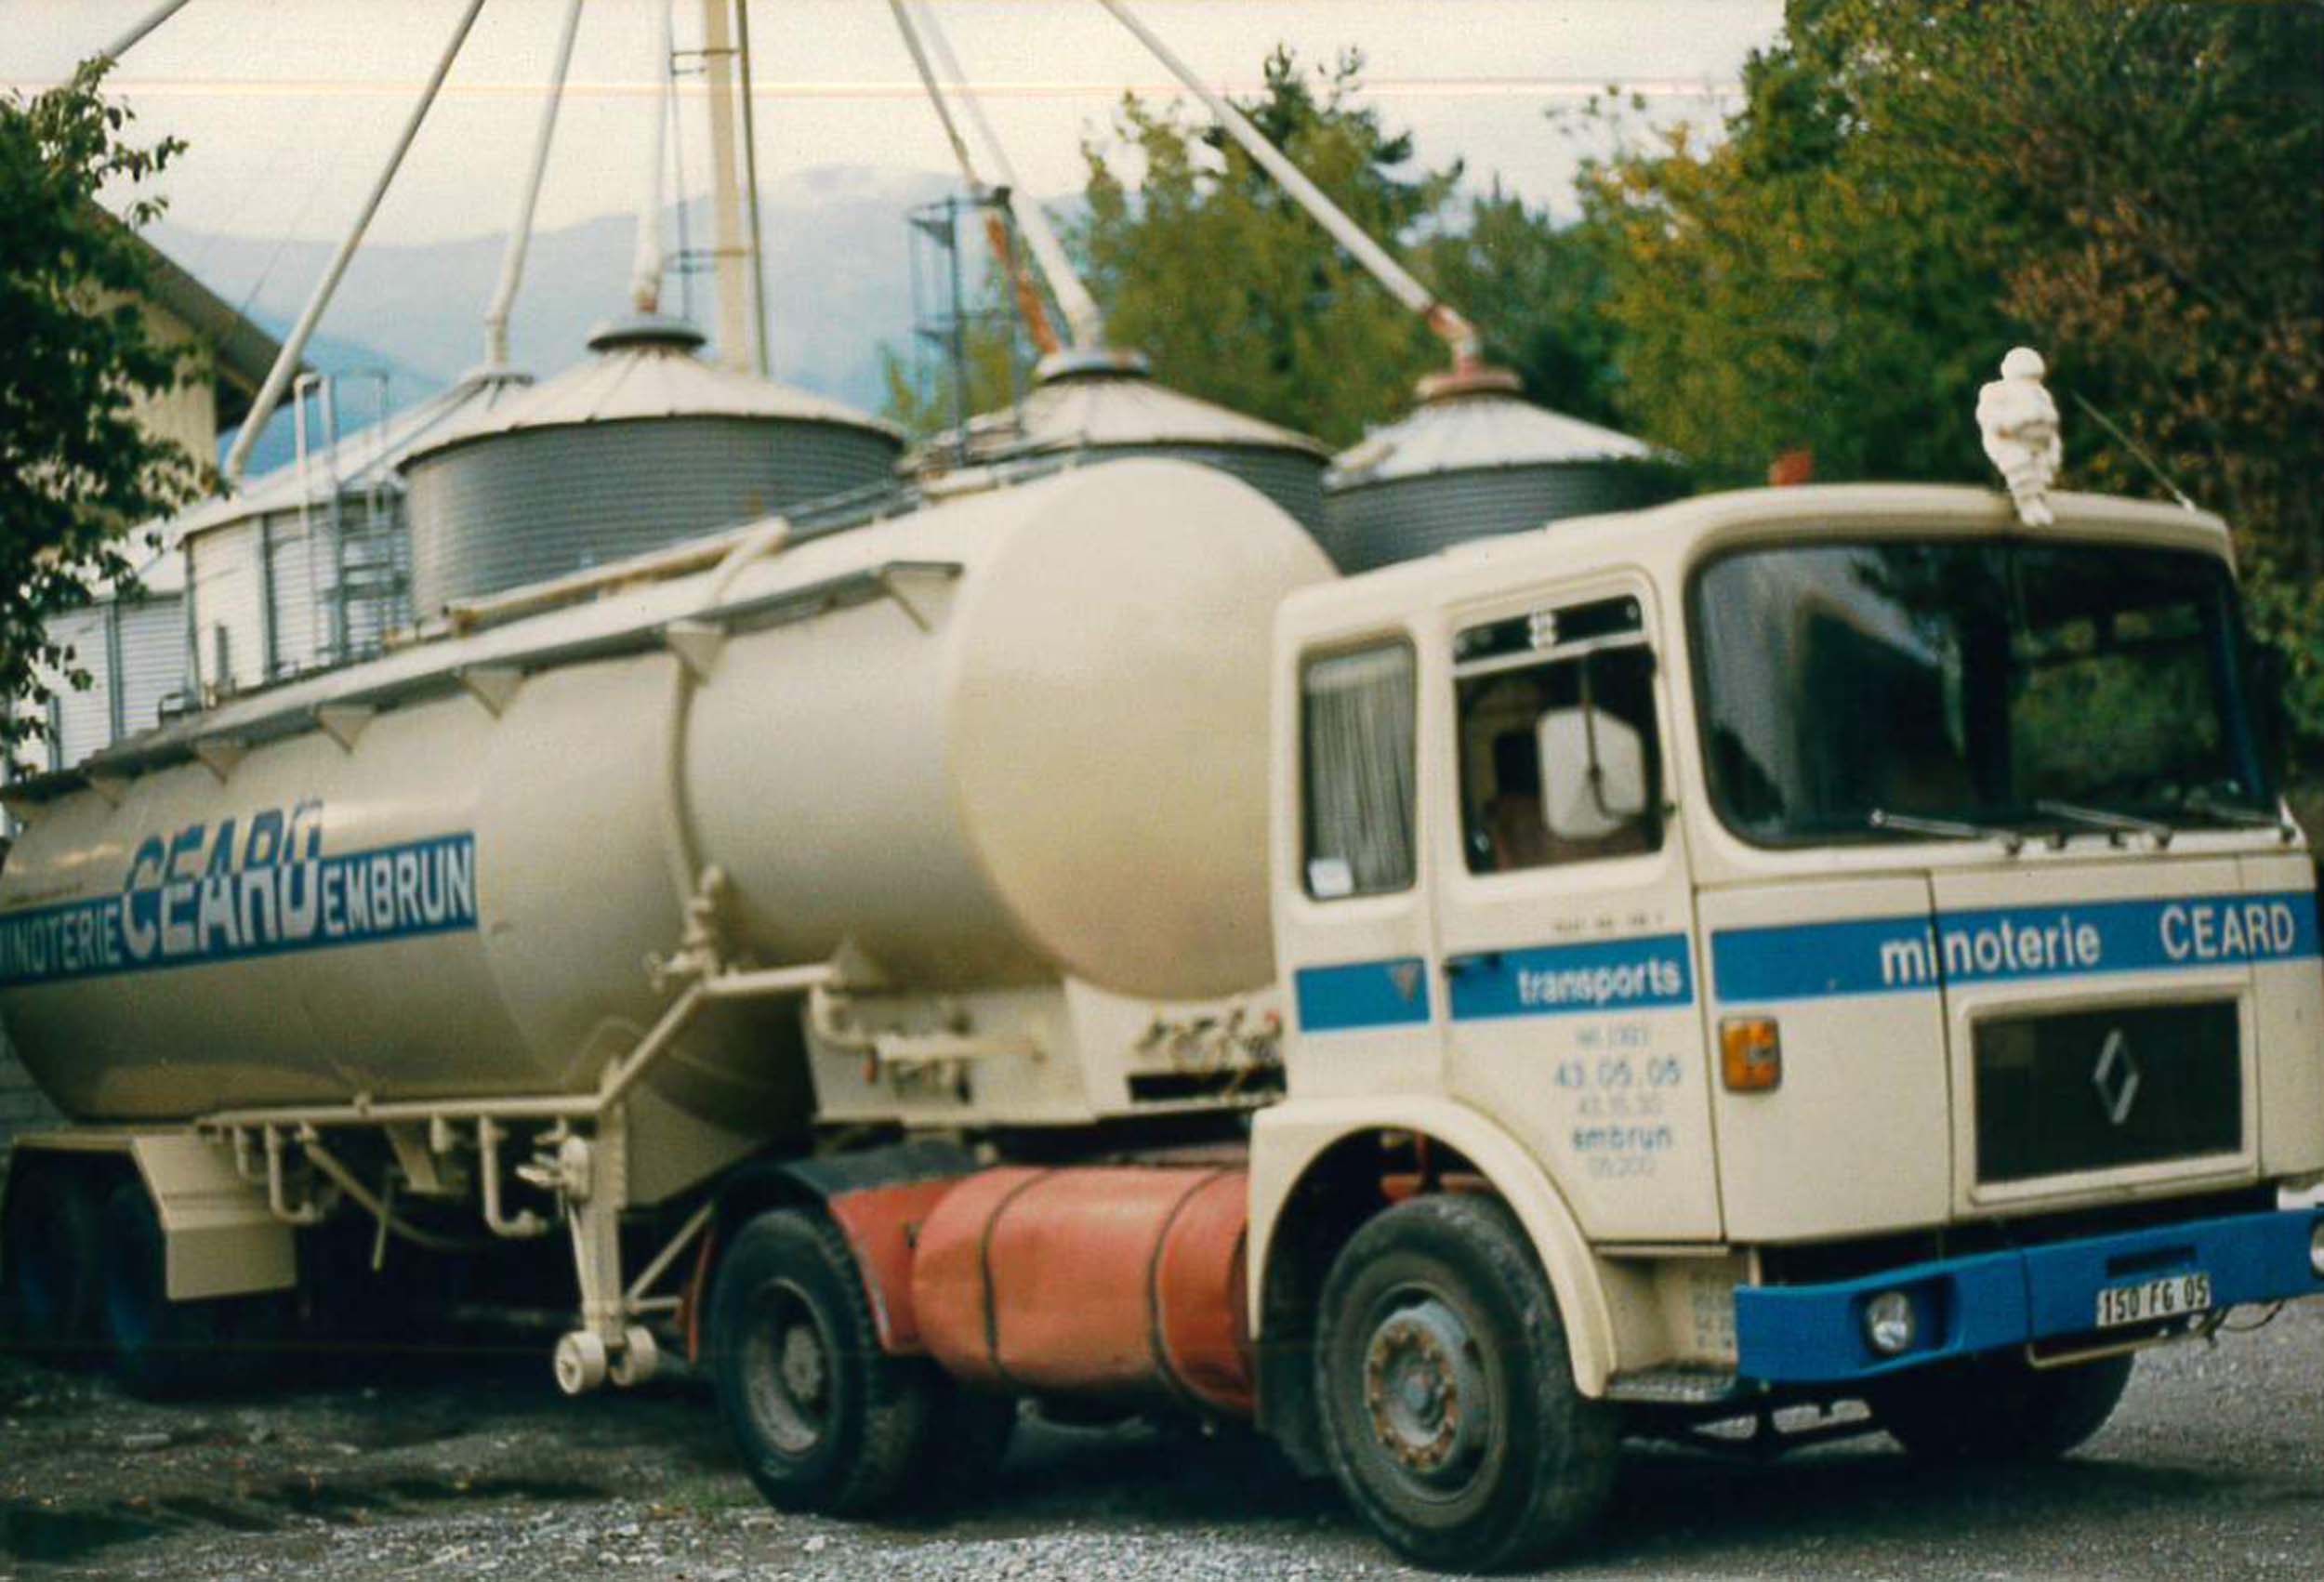 Camion-ceard-1981